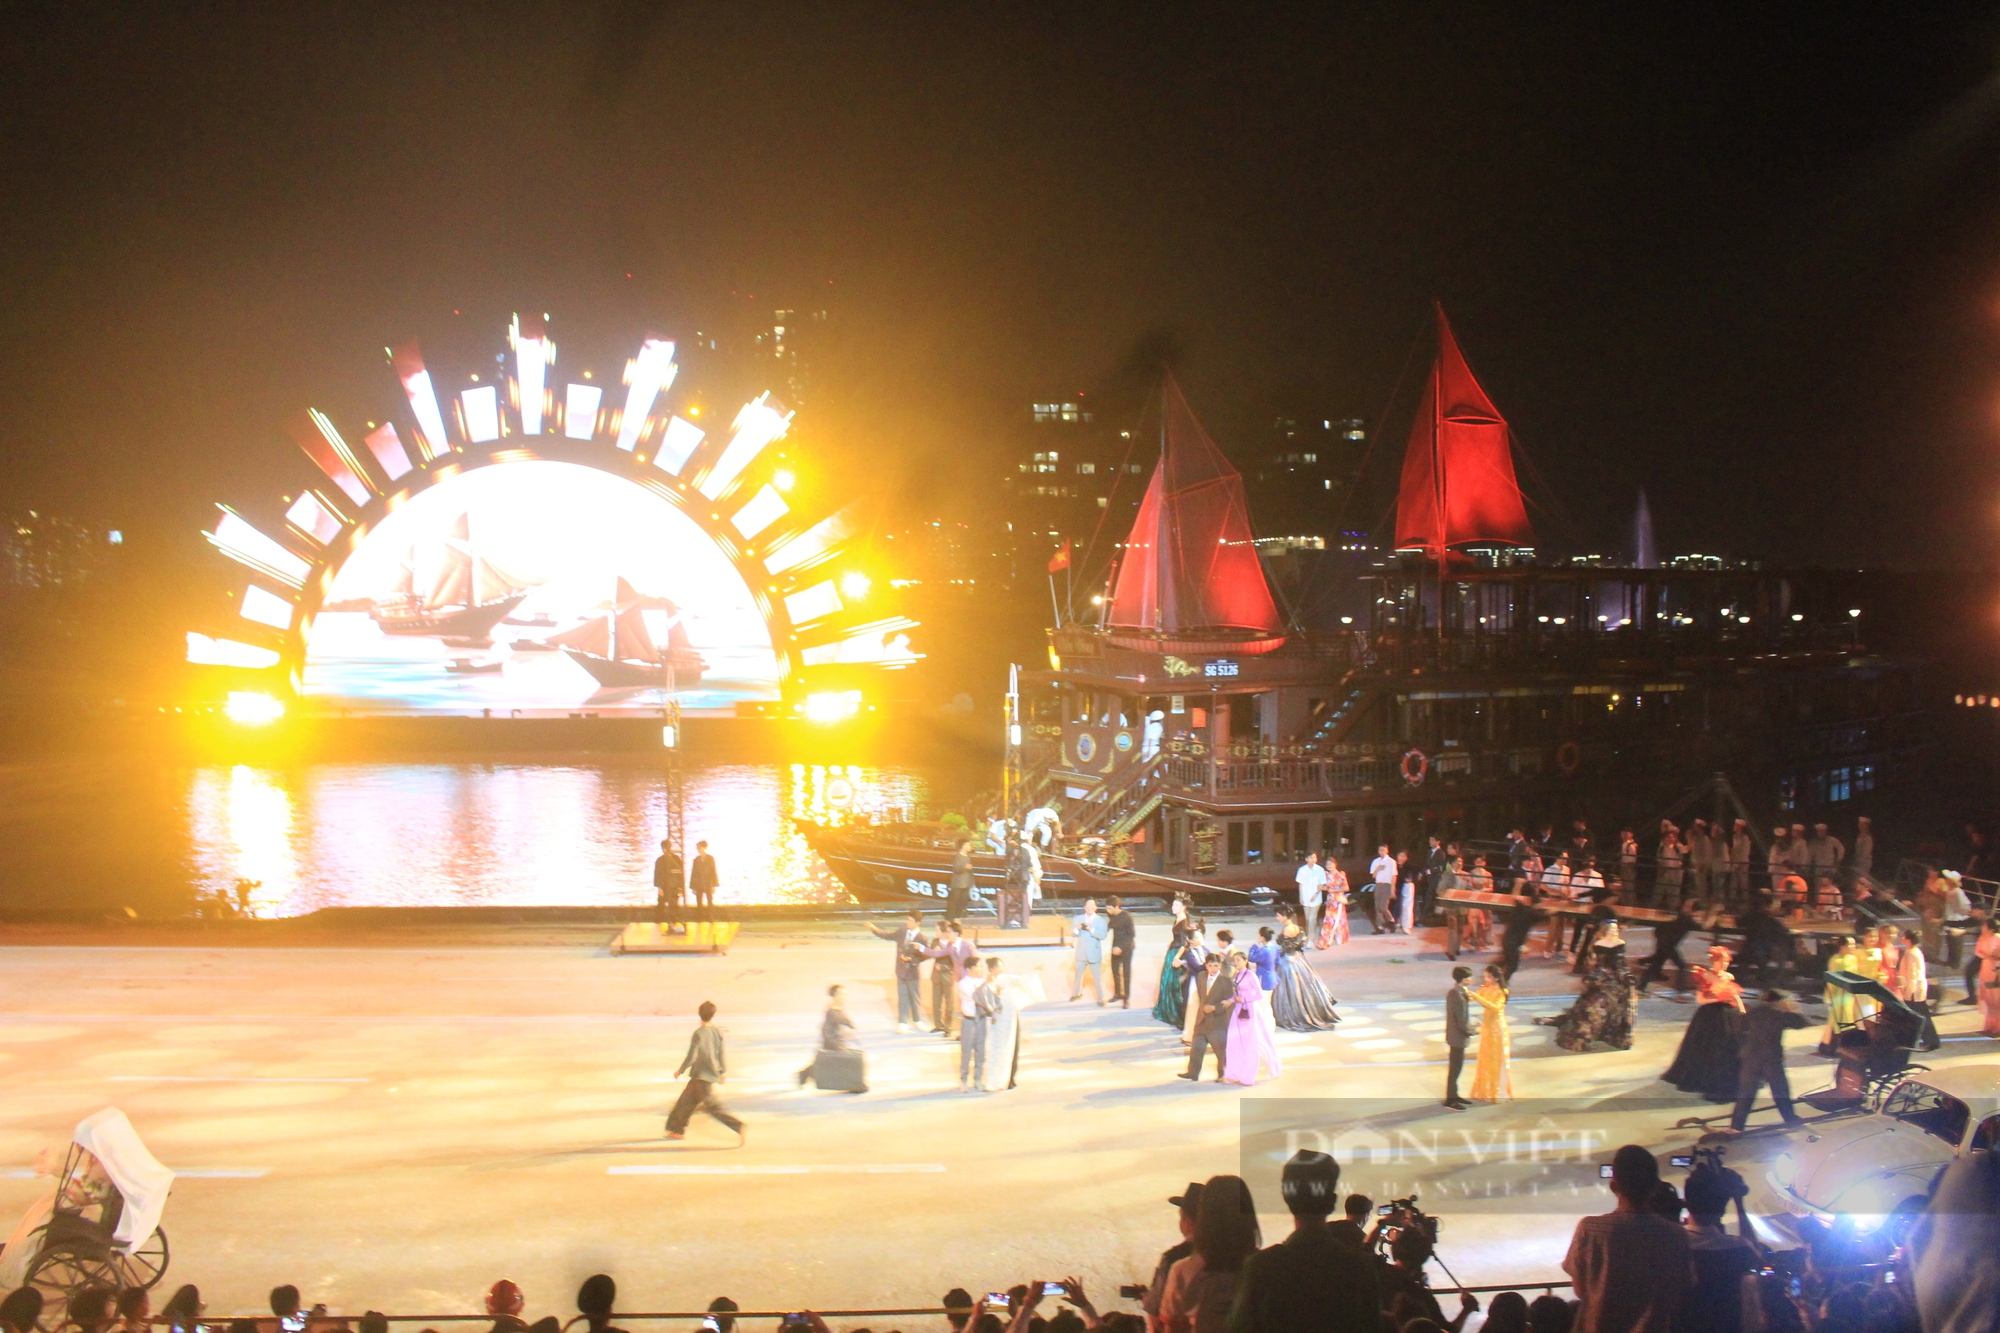 Mãn nhãn đêm nghệ thuật Dòng sông kể chuyện, 700 diễn viên biểu diễn trên sông Sài Gòn - Ảnh 8.